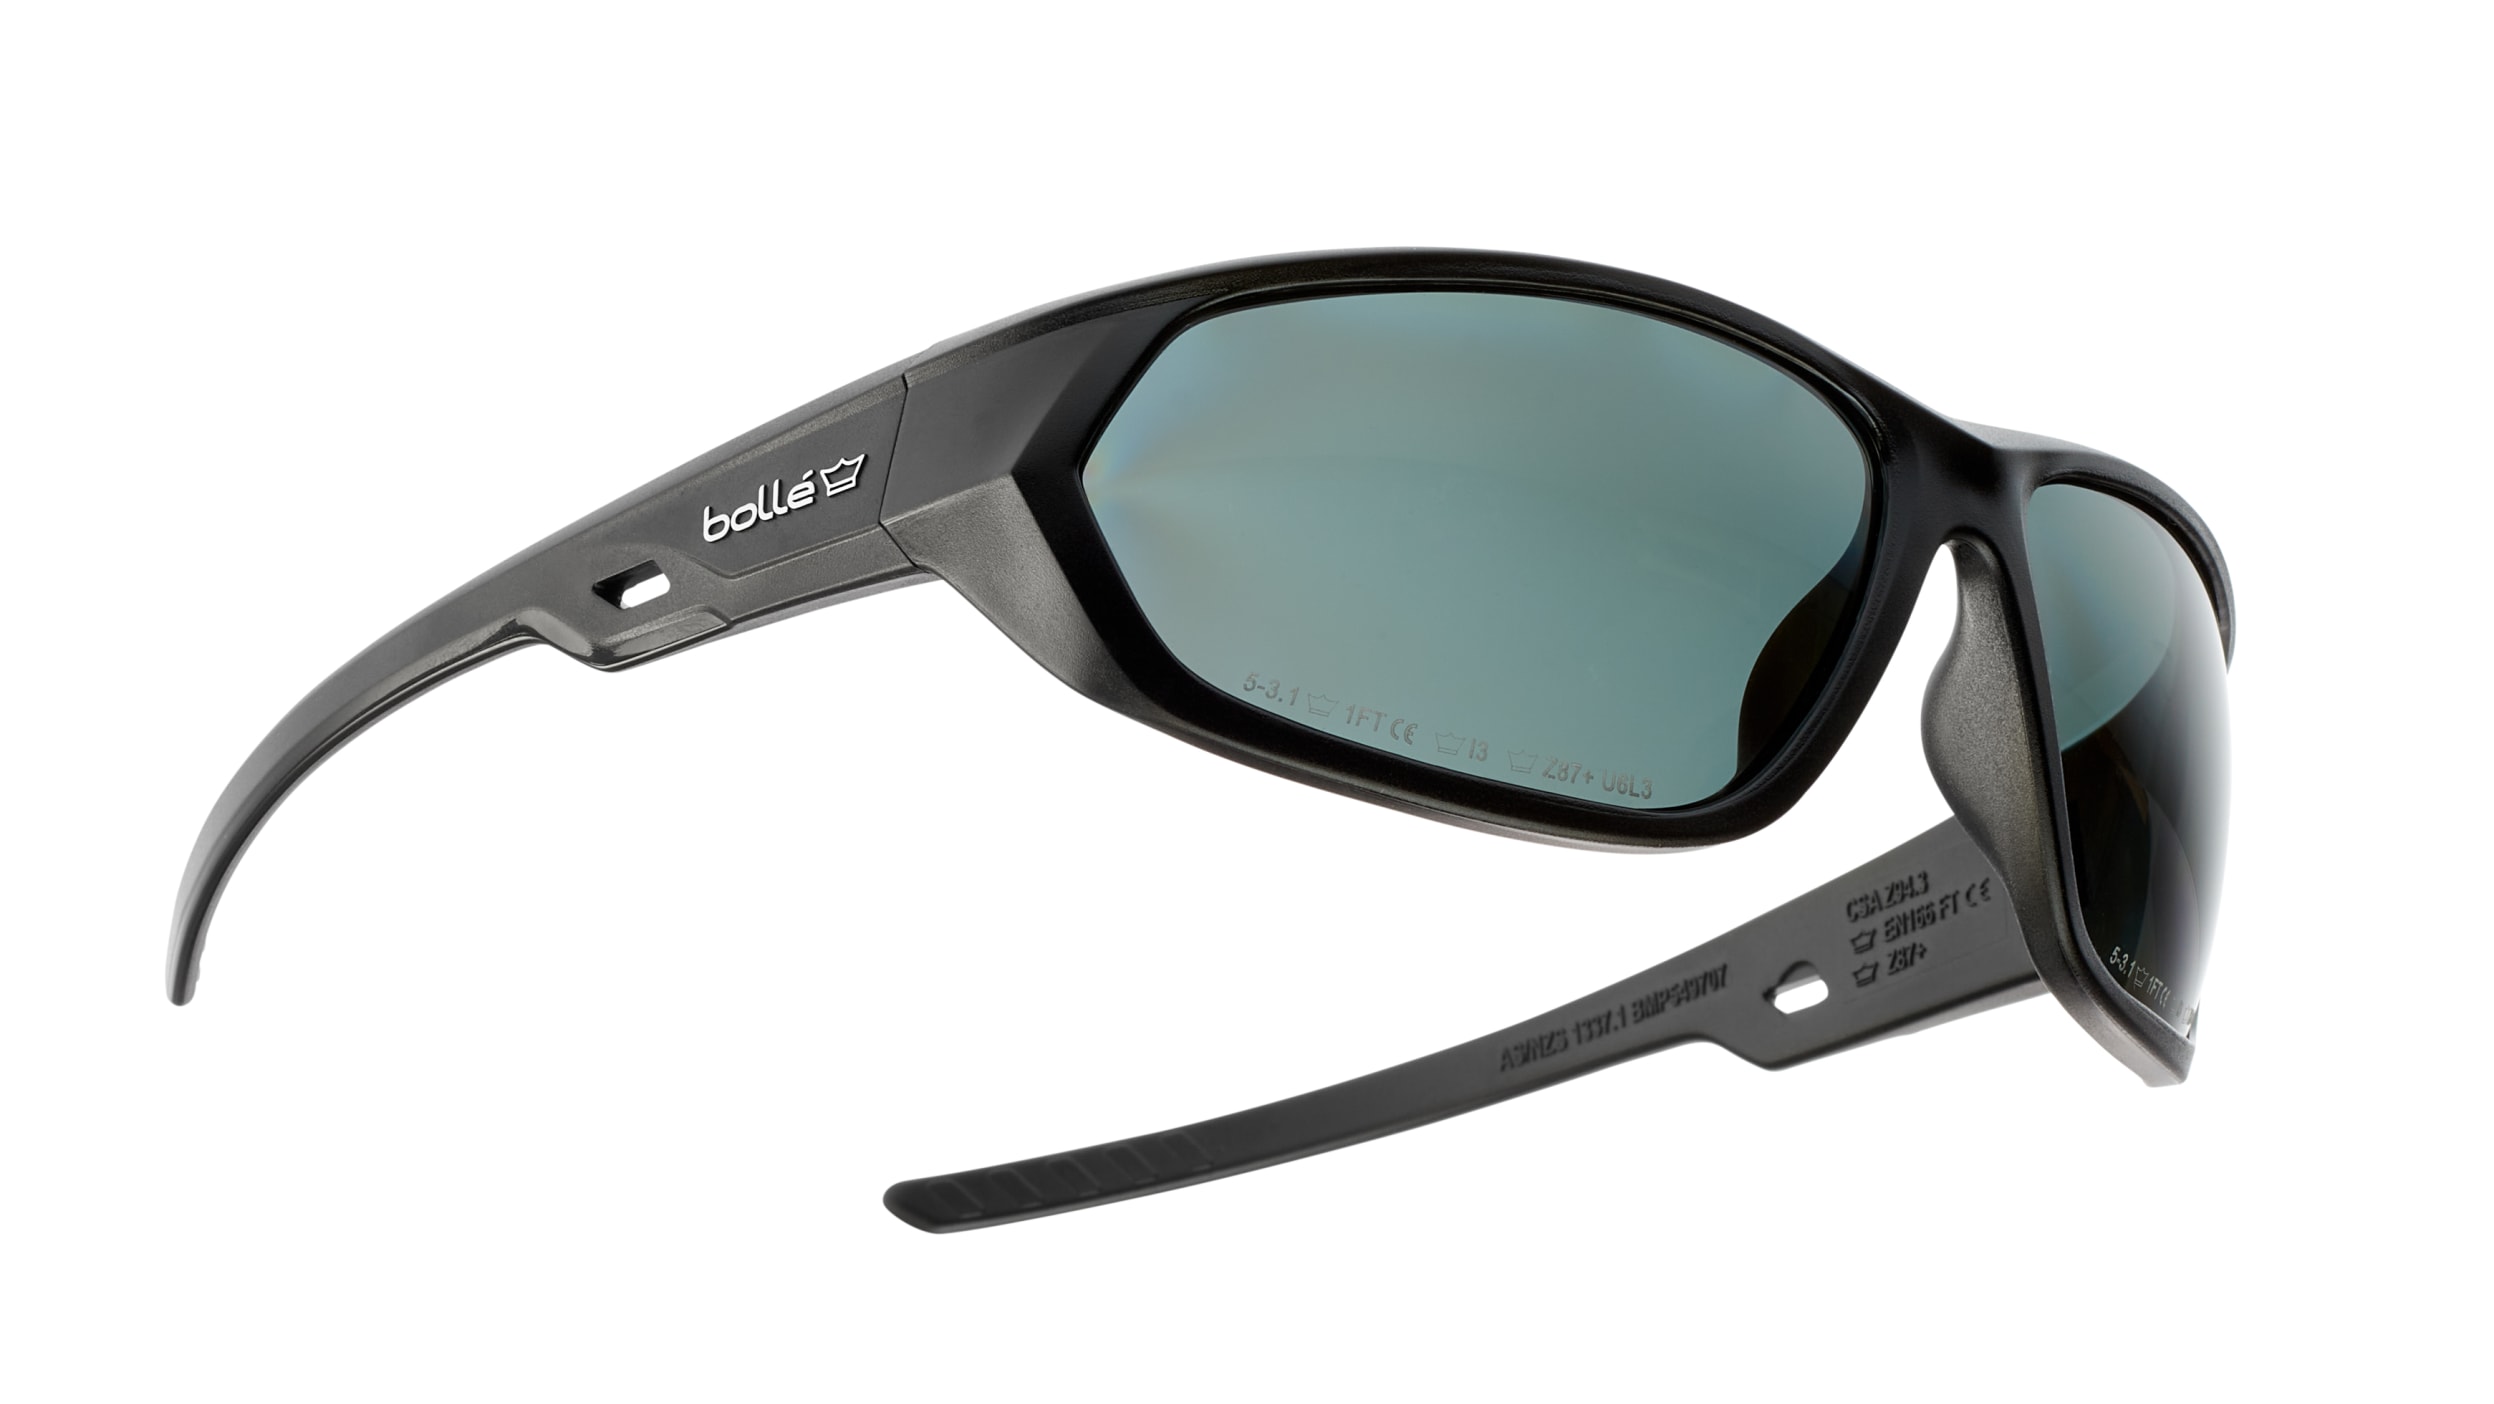 Gafas de seguridad Bolle RUSH+, color de lente Humo, antirrayaduras,  antivaho